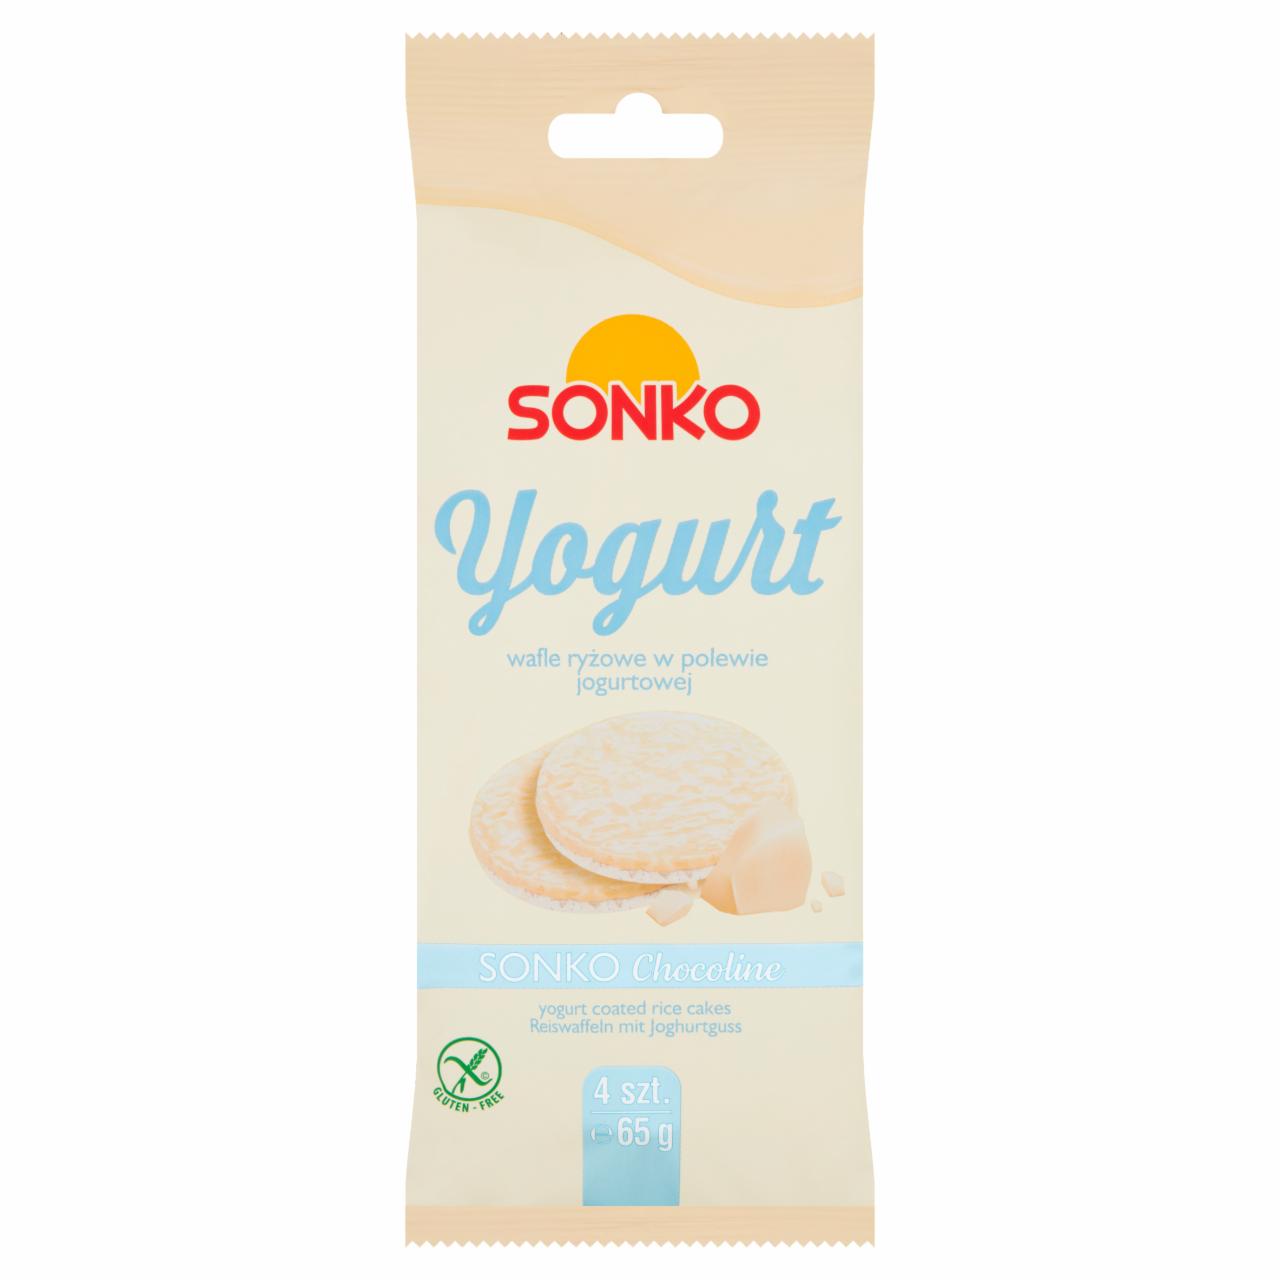 Fotografie - Yogurt wafle ryżowe w polewie jogurtowej Sonko